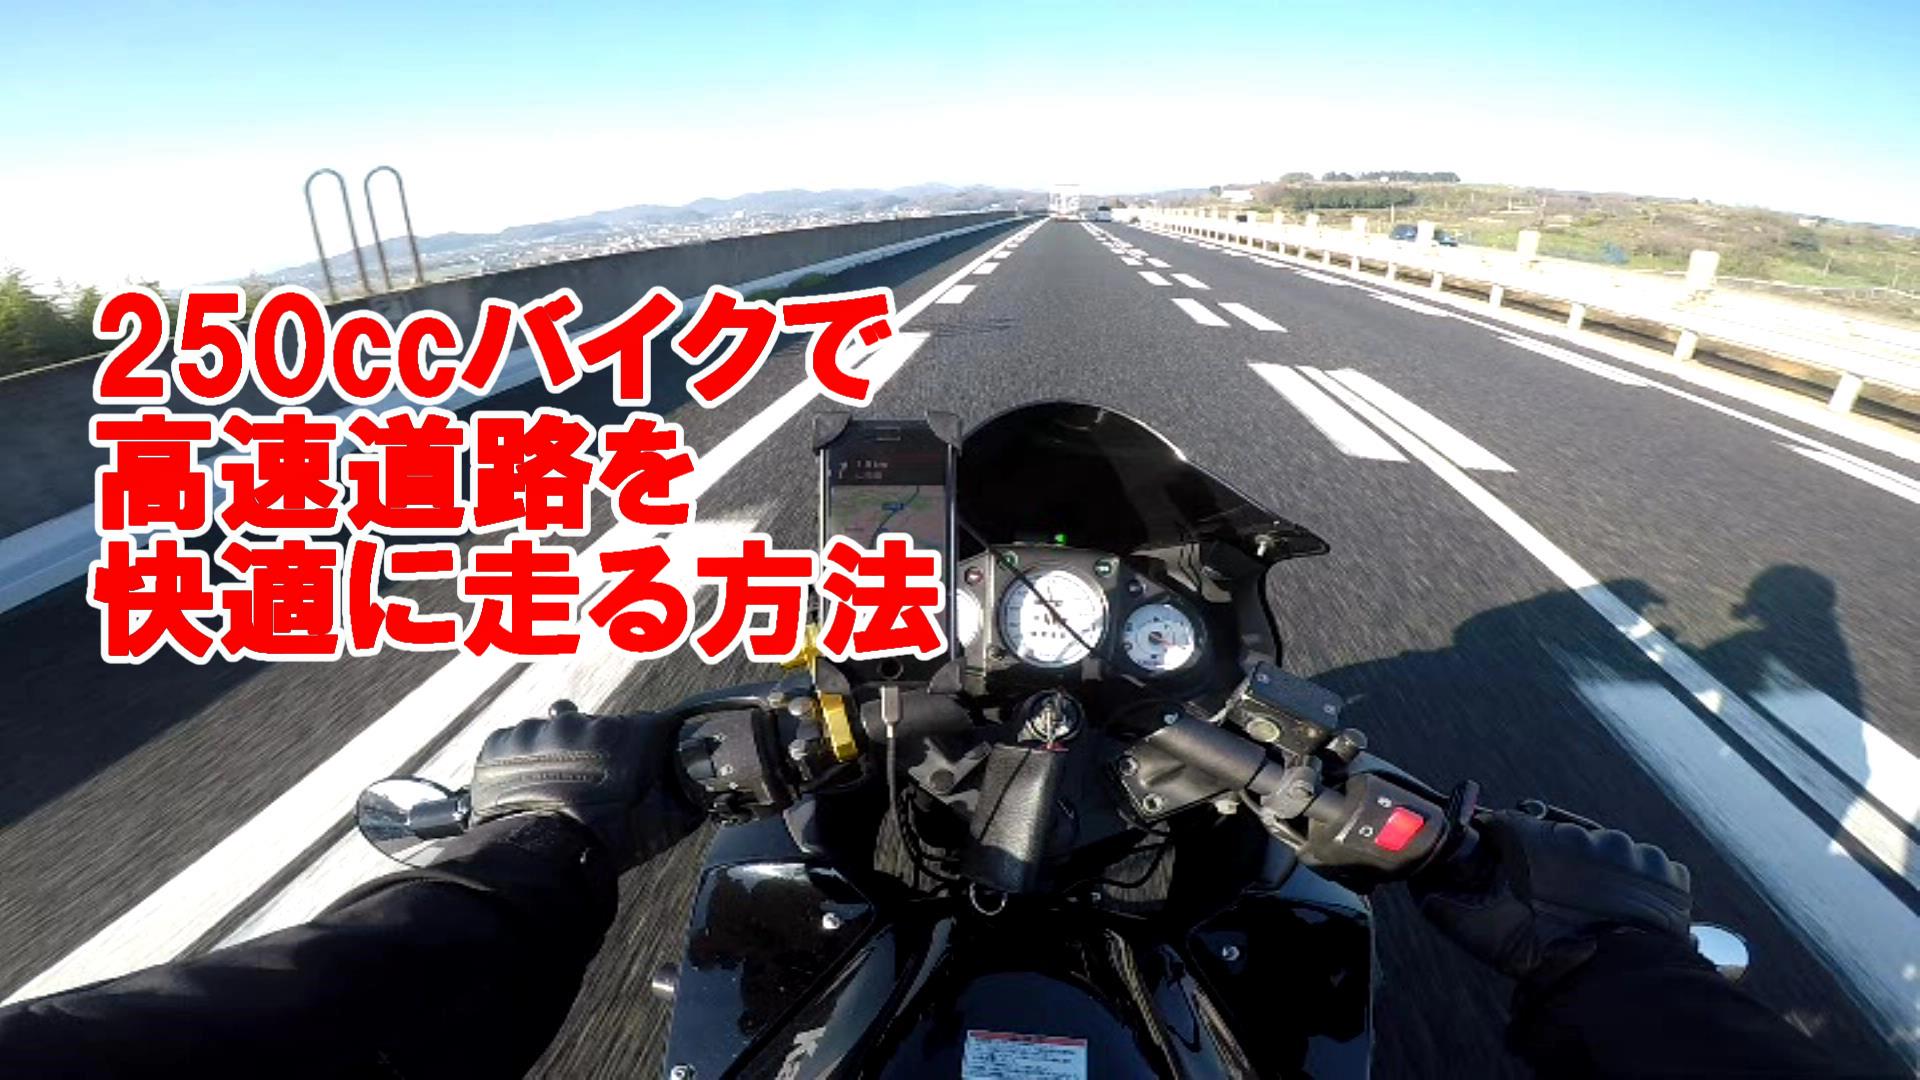 250ccバイクで高速道路を快適に走る方法 Takablog